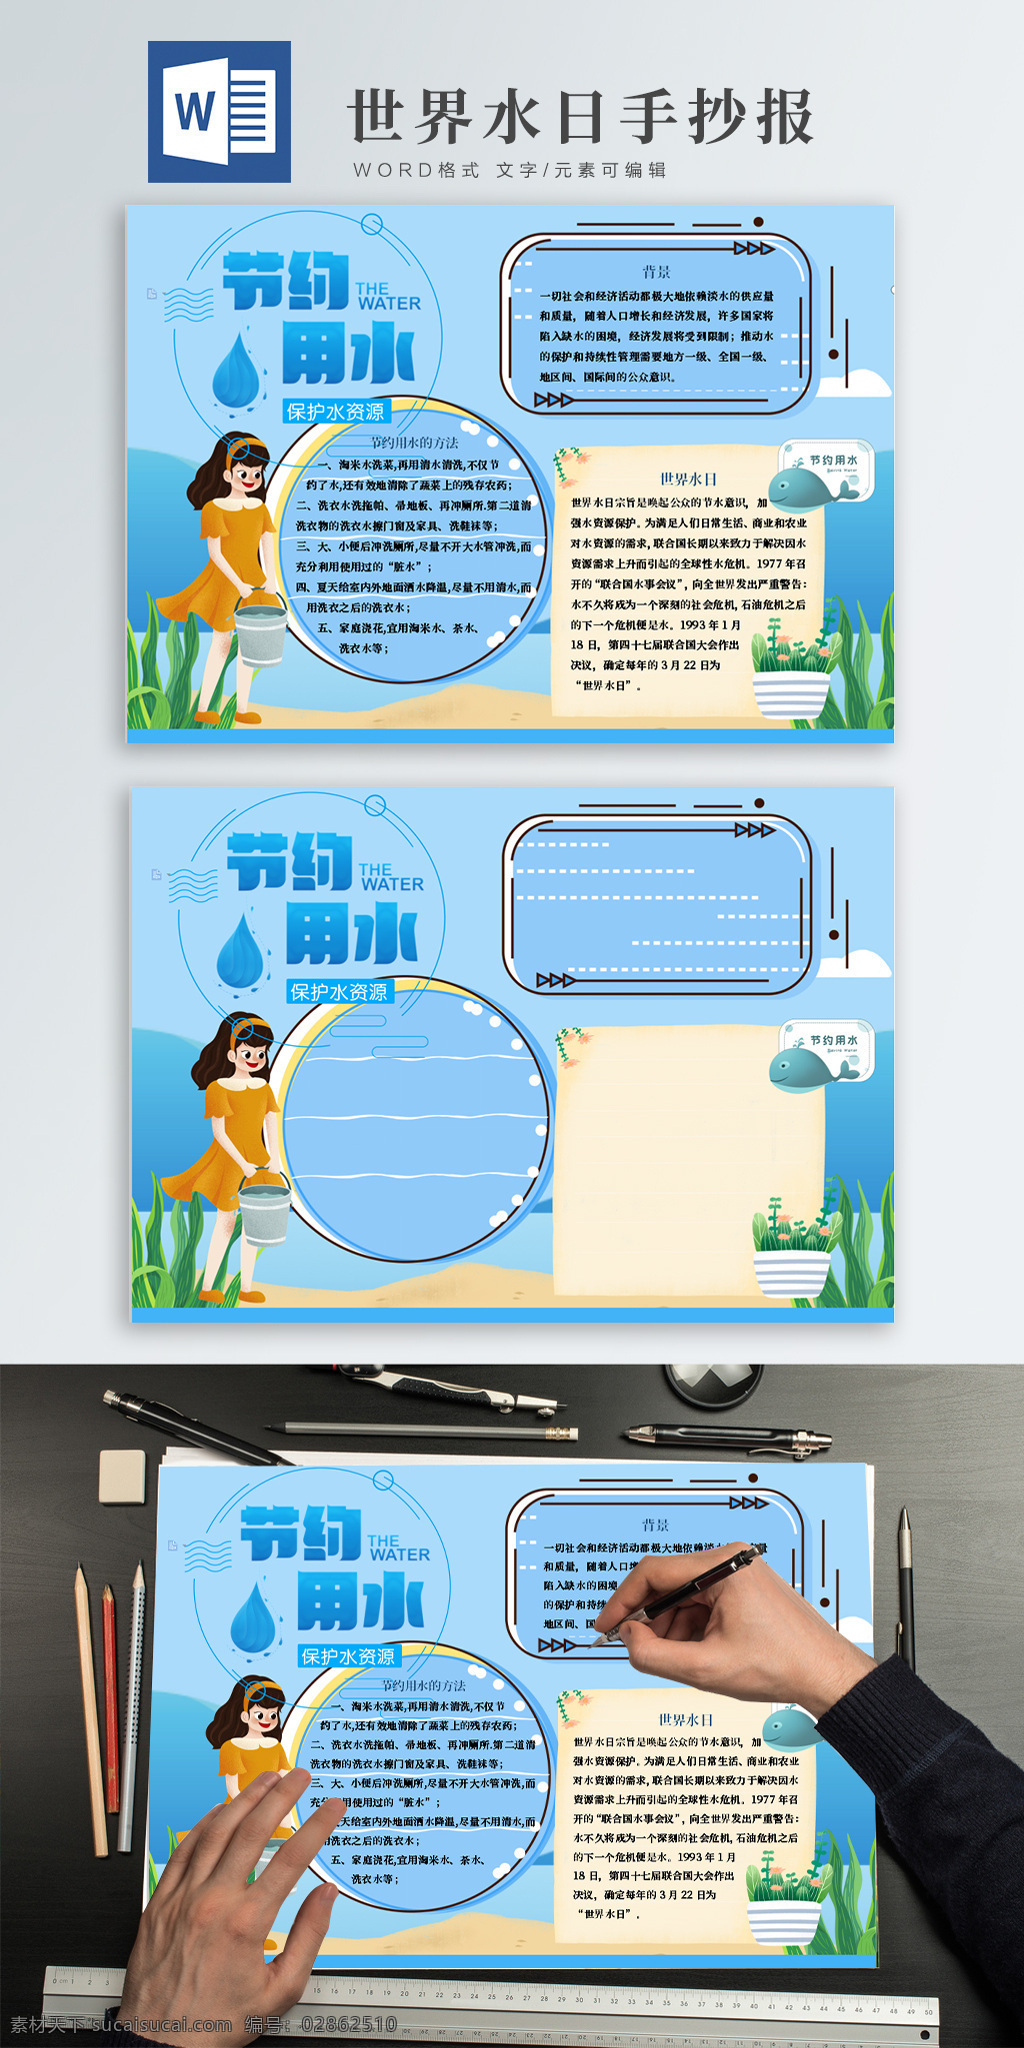 世界 水日 节约 用水 蓝色 卡通 手 抄报 世界水日 节约用水